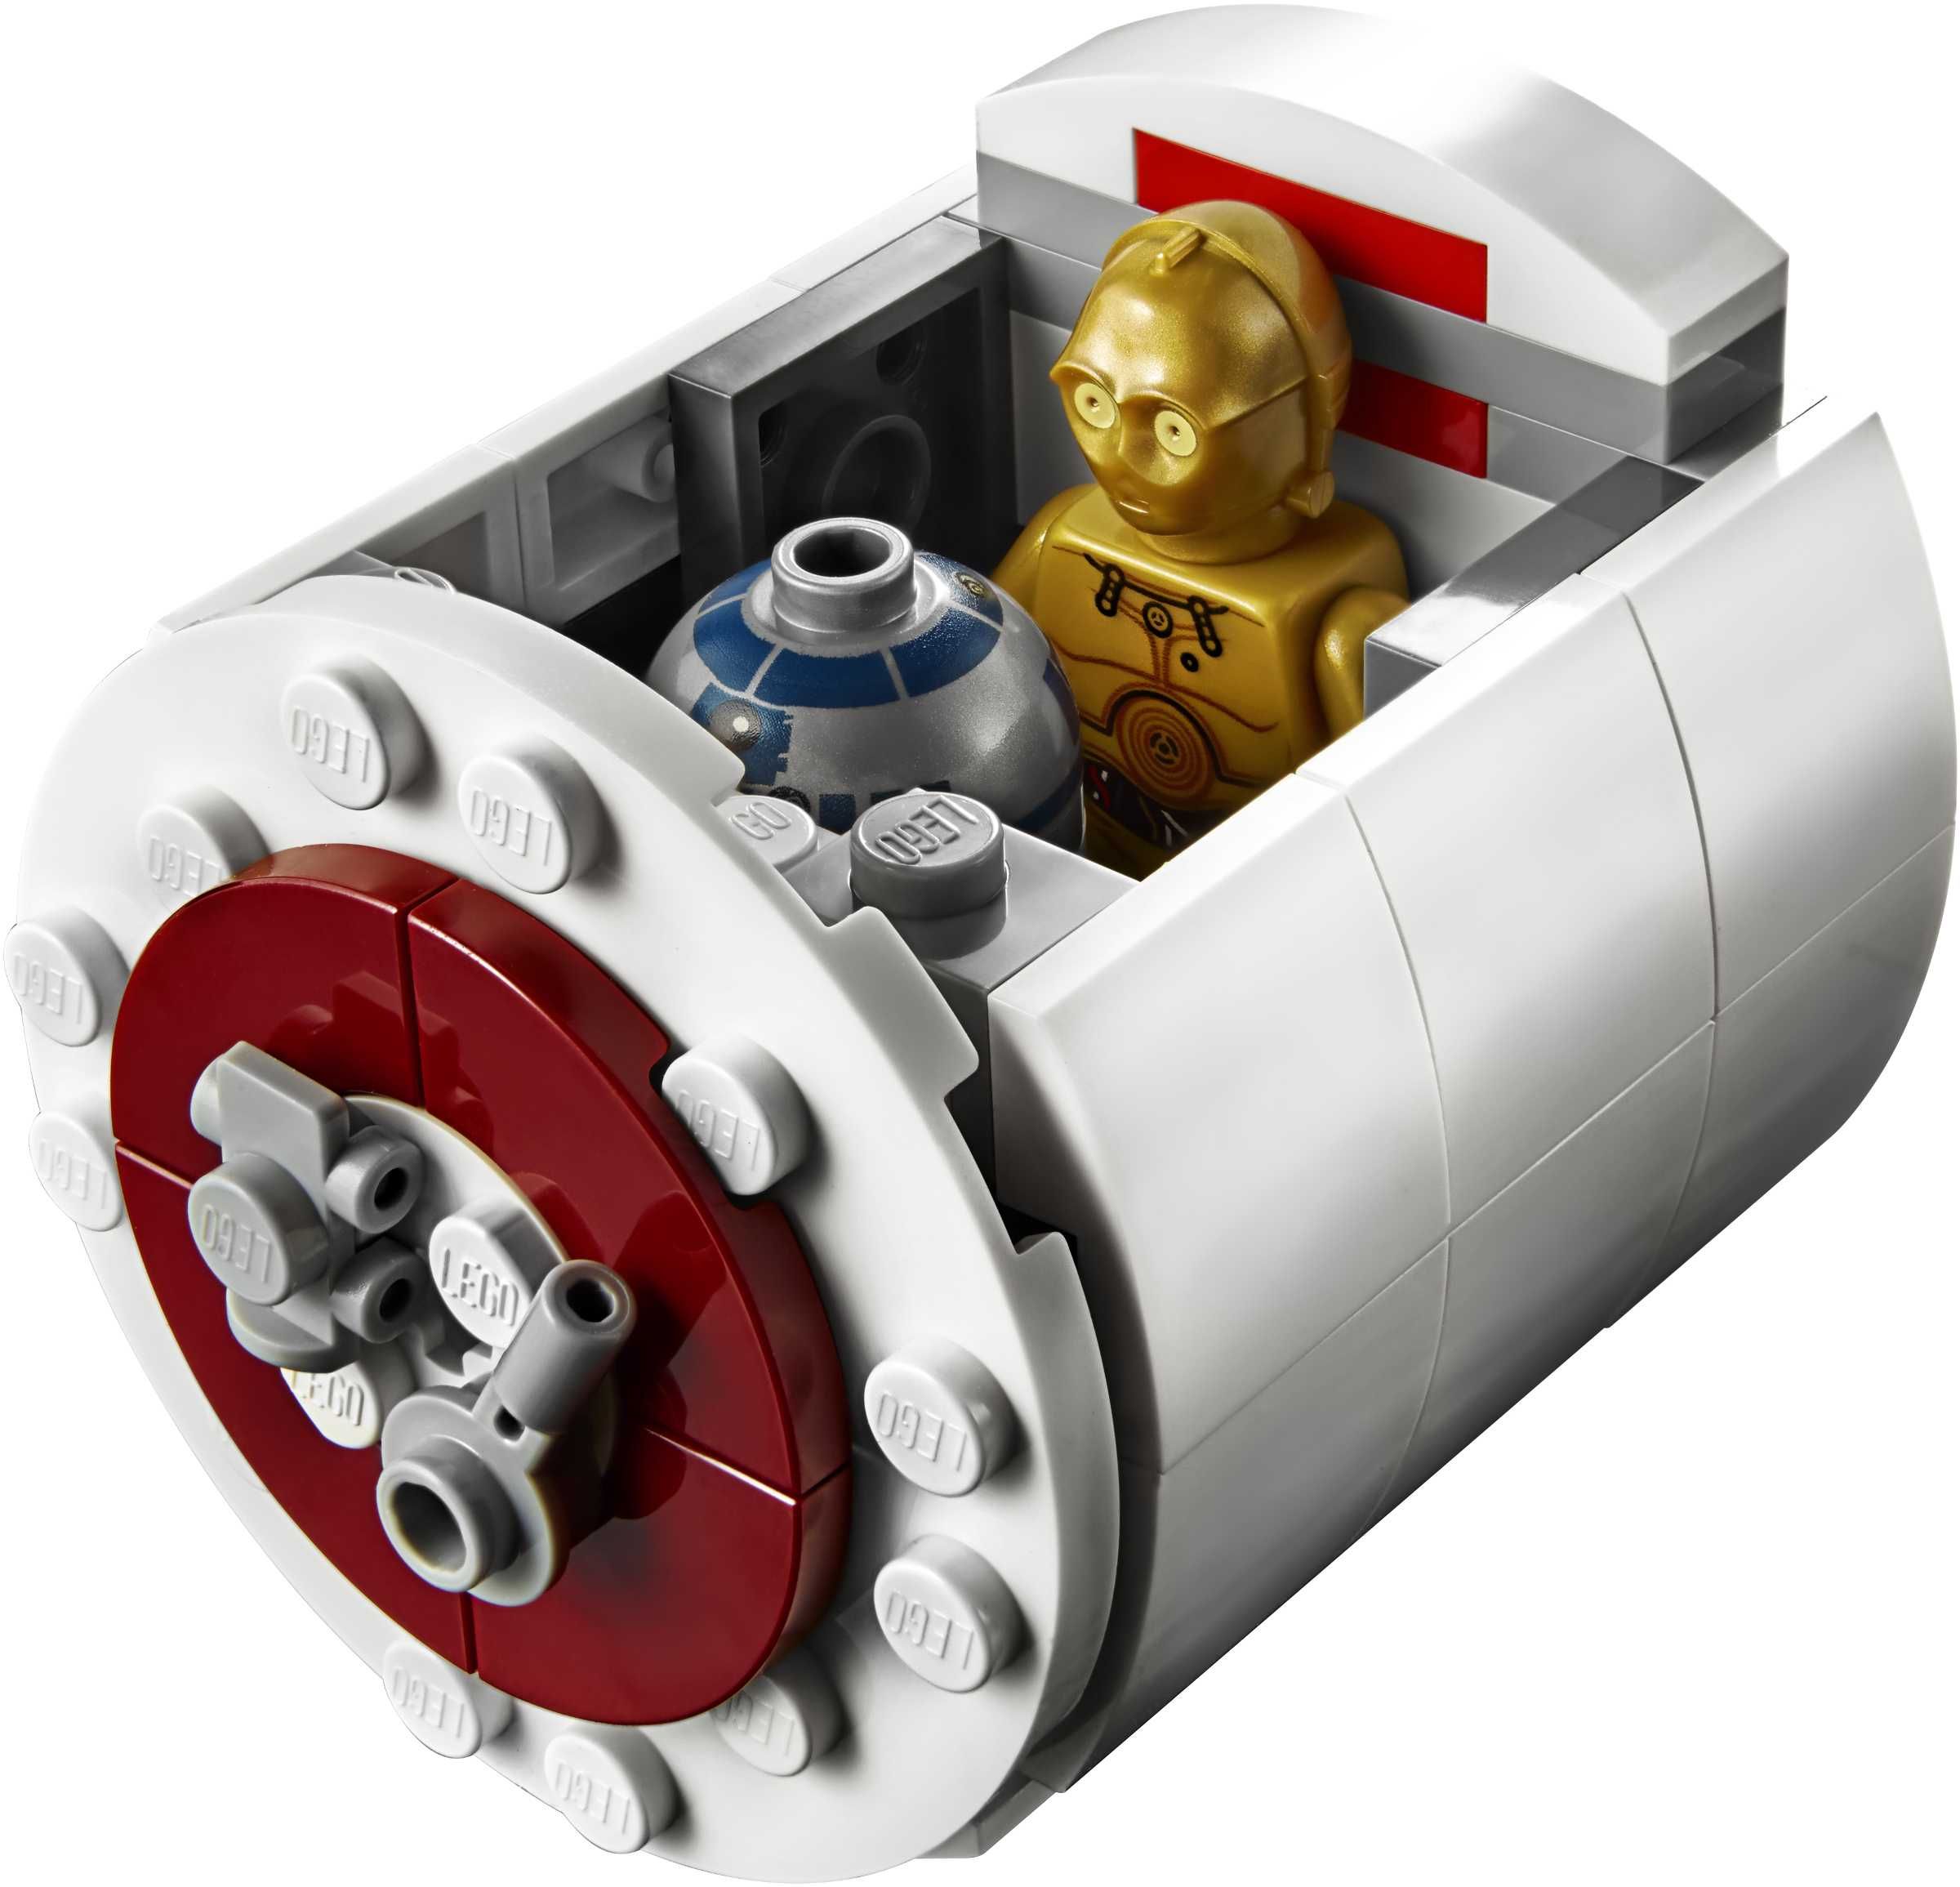 LEGO Star Wars 75244 : Tantive IV - set de colectie